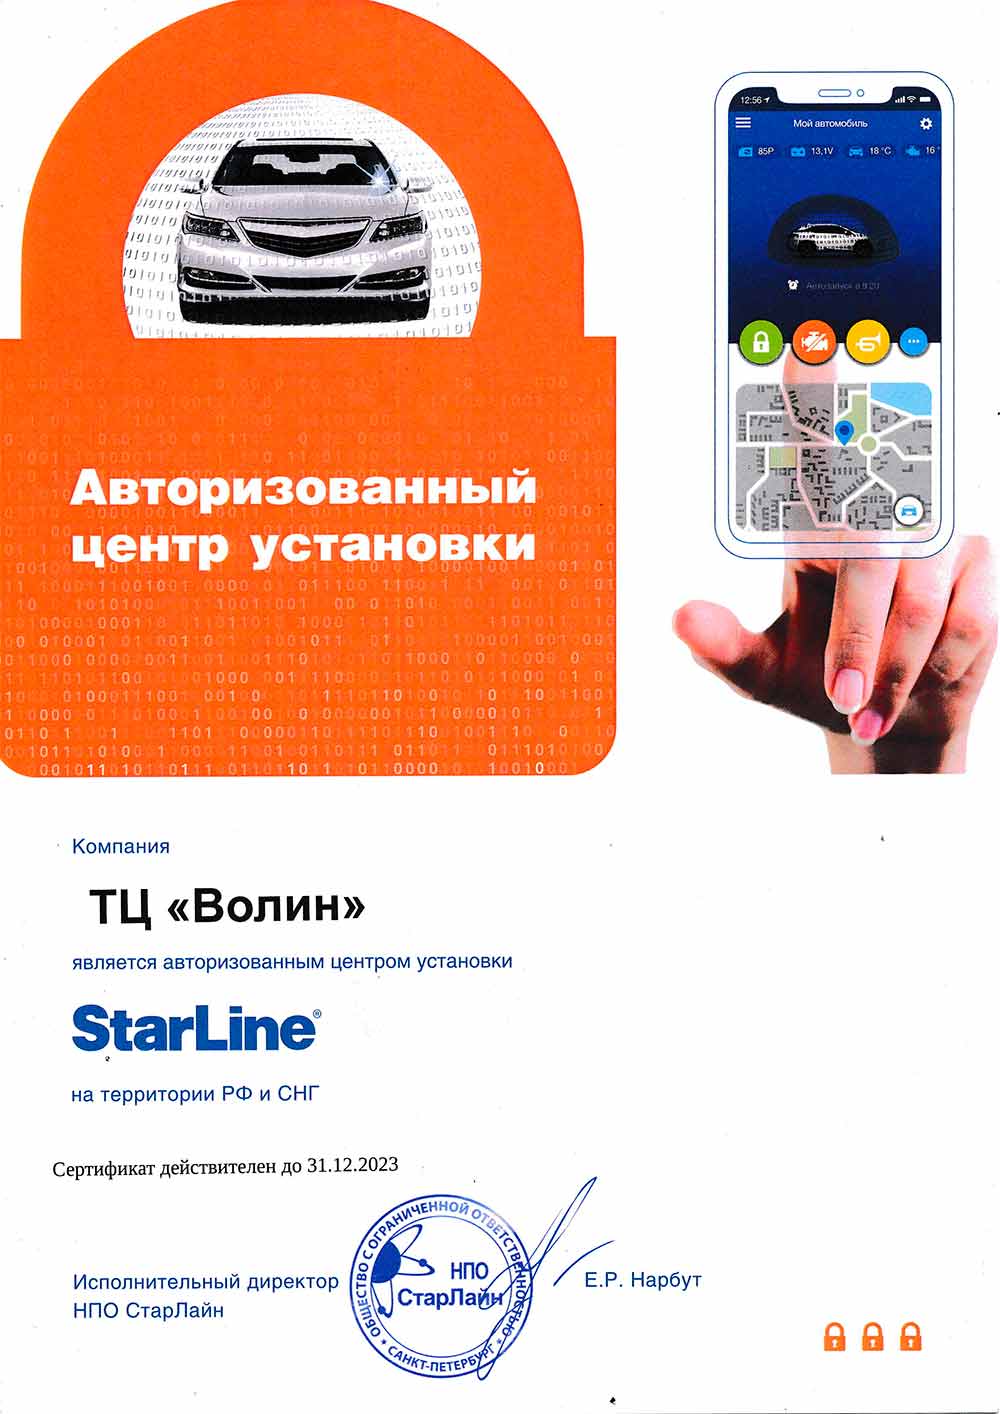 ТЦ «ВОЛИН» - авторизованный центр по установке автосигнализаций StarLine. Сертификат